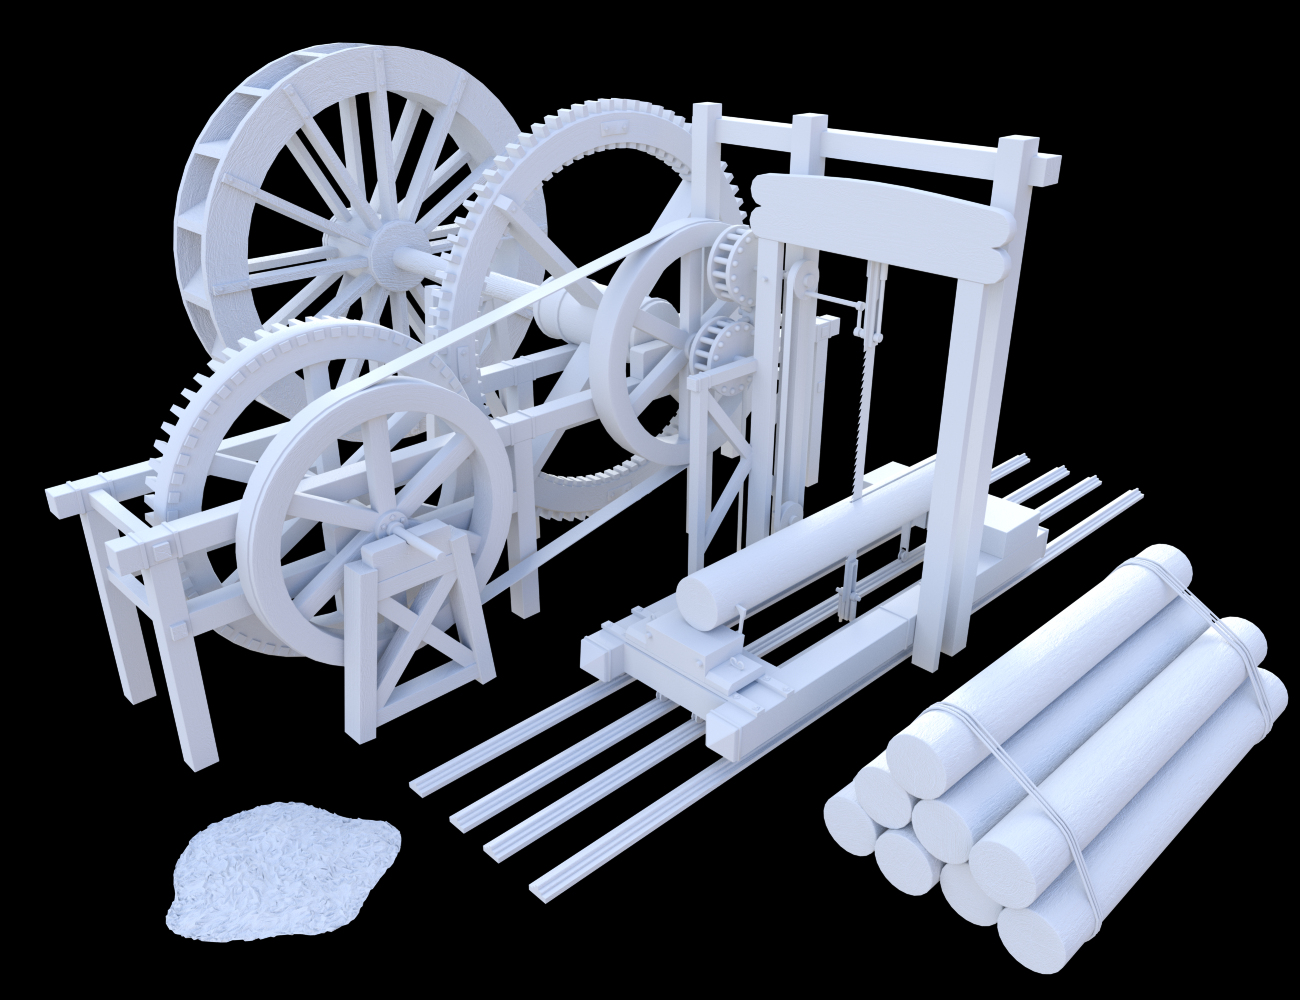 Sawmill Props by: Merlin Studios, 3D Models by Daz 3D